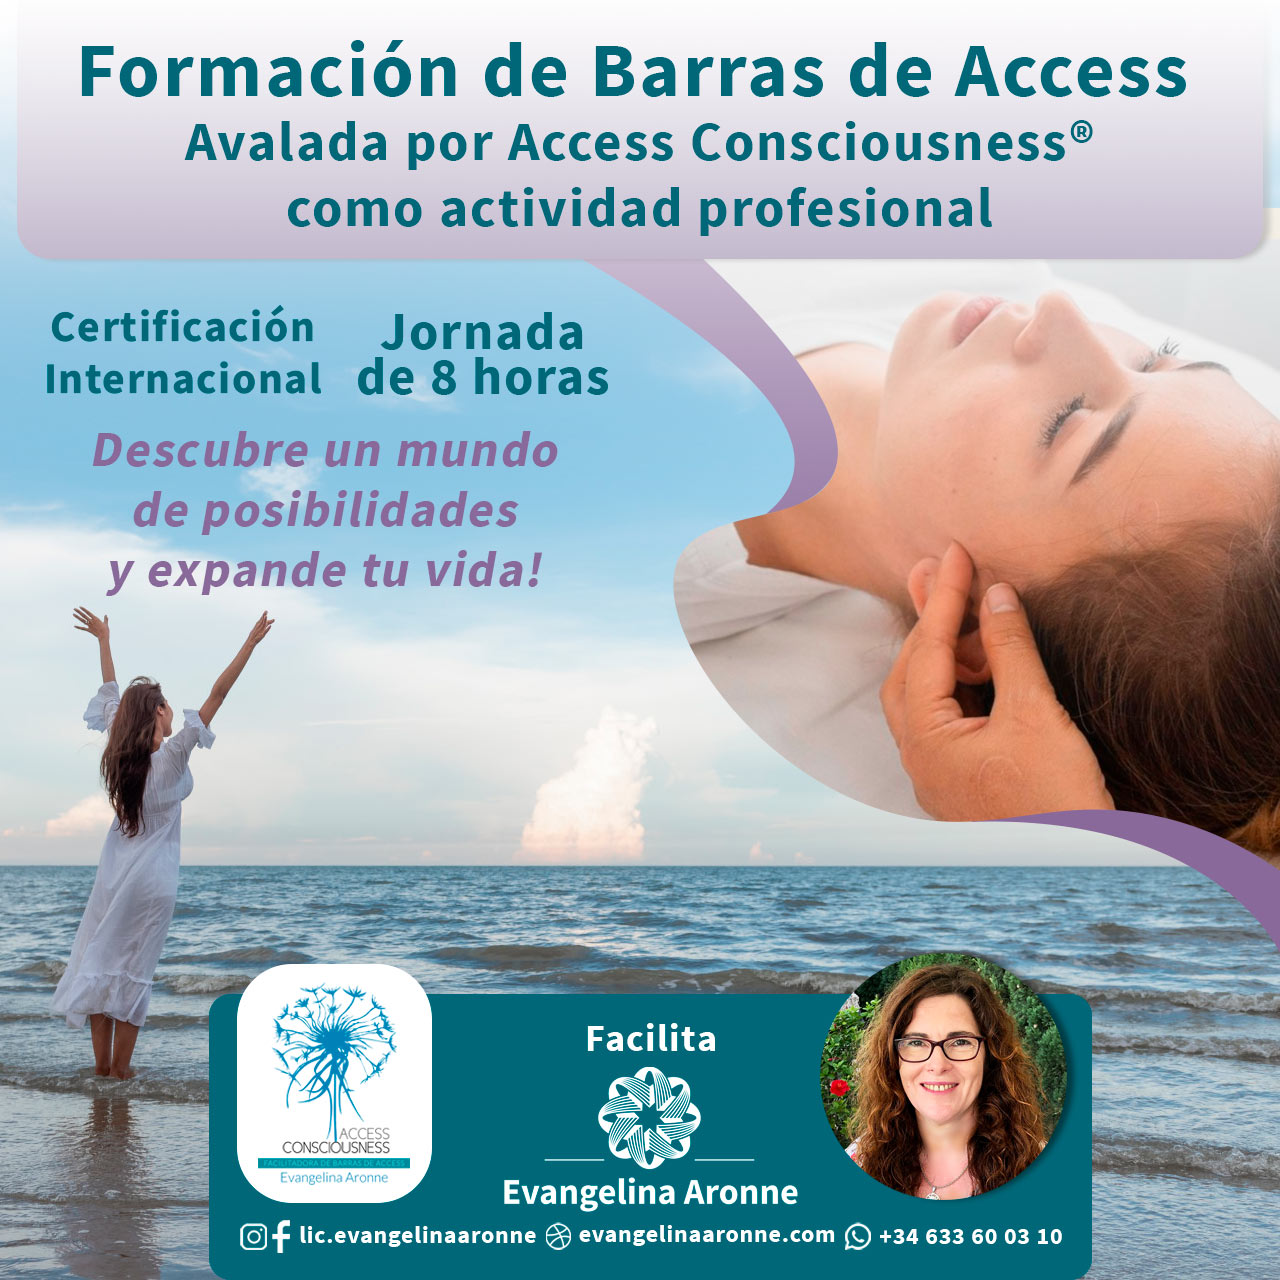 Formación de Barras de Access Avalada por Access Consciousness® como actividad profesional.